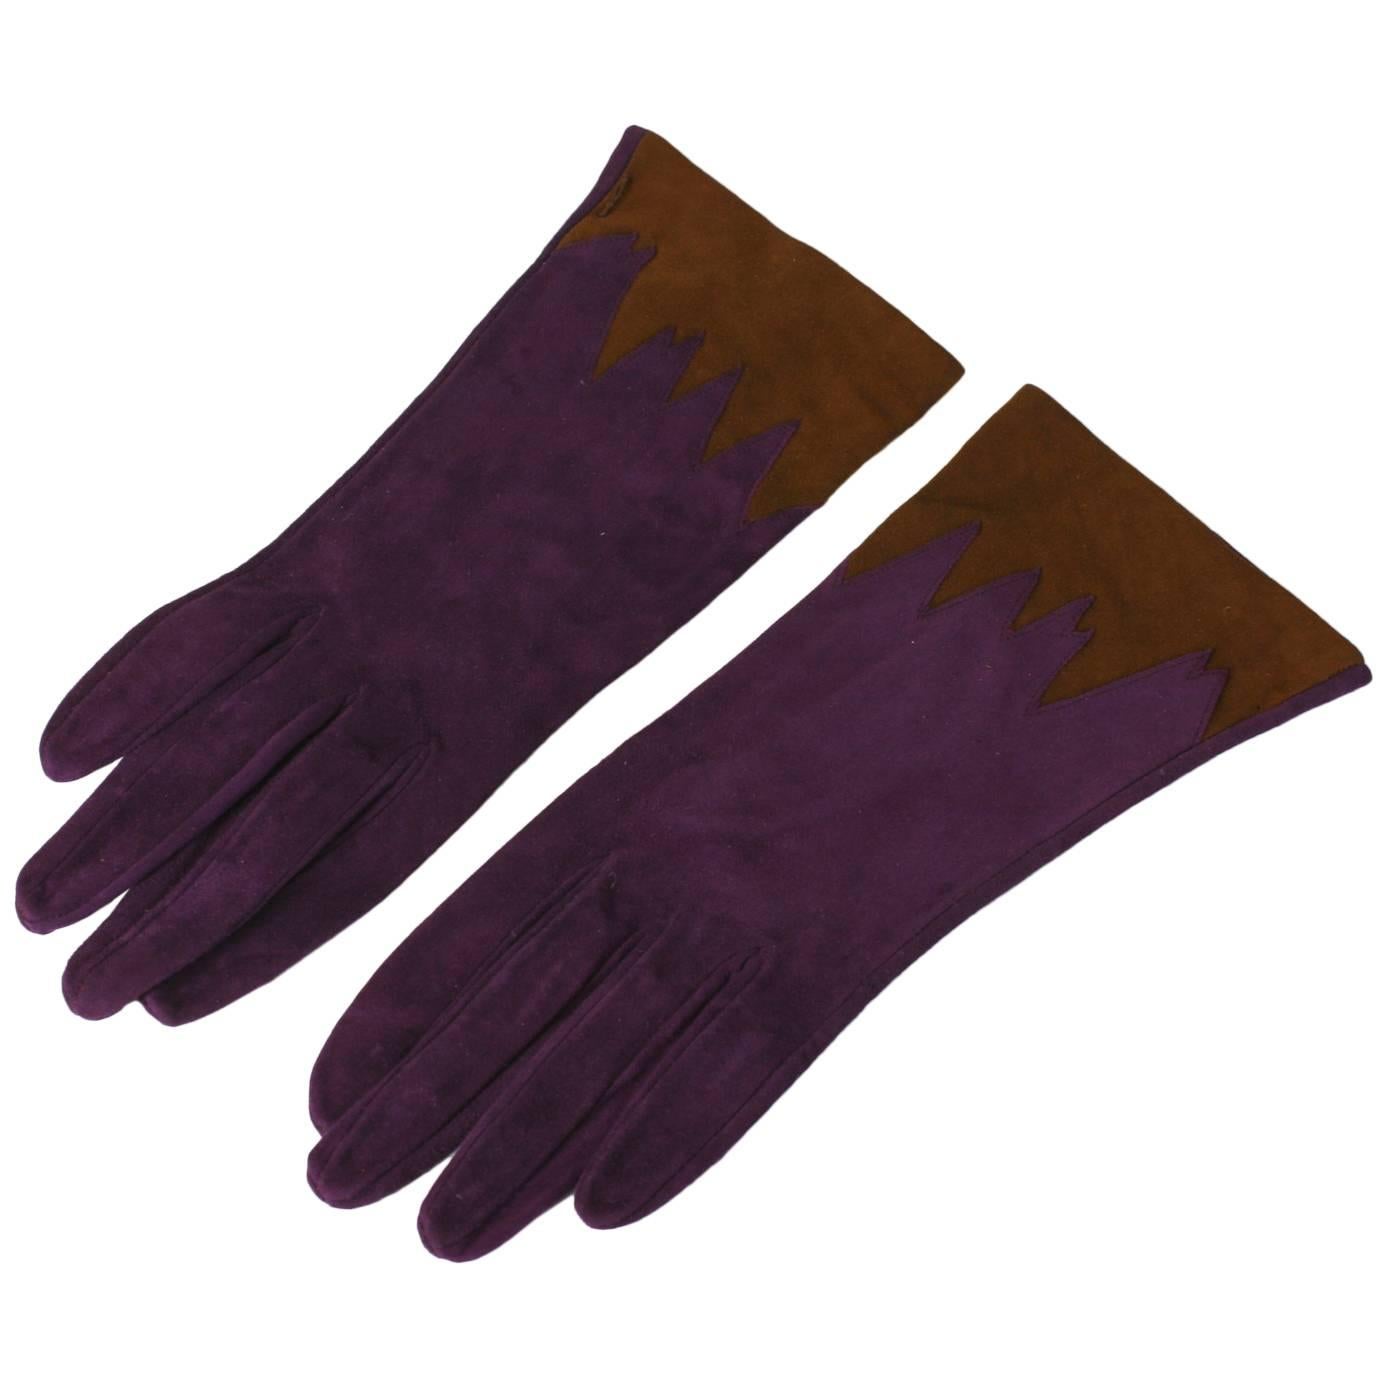 Violet Suede Gloves with Brown Cuffs